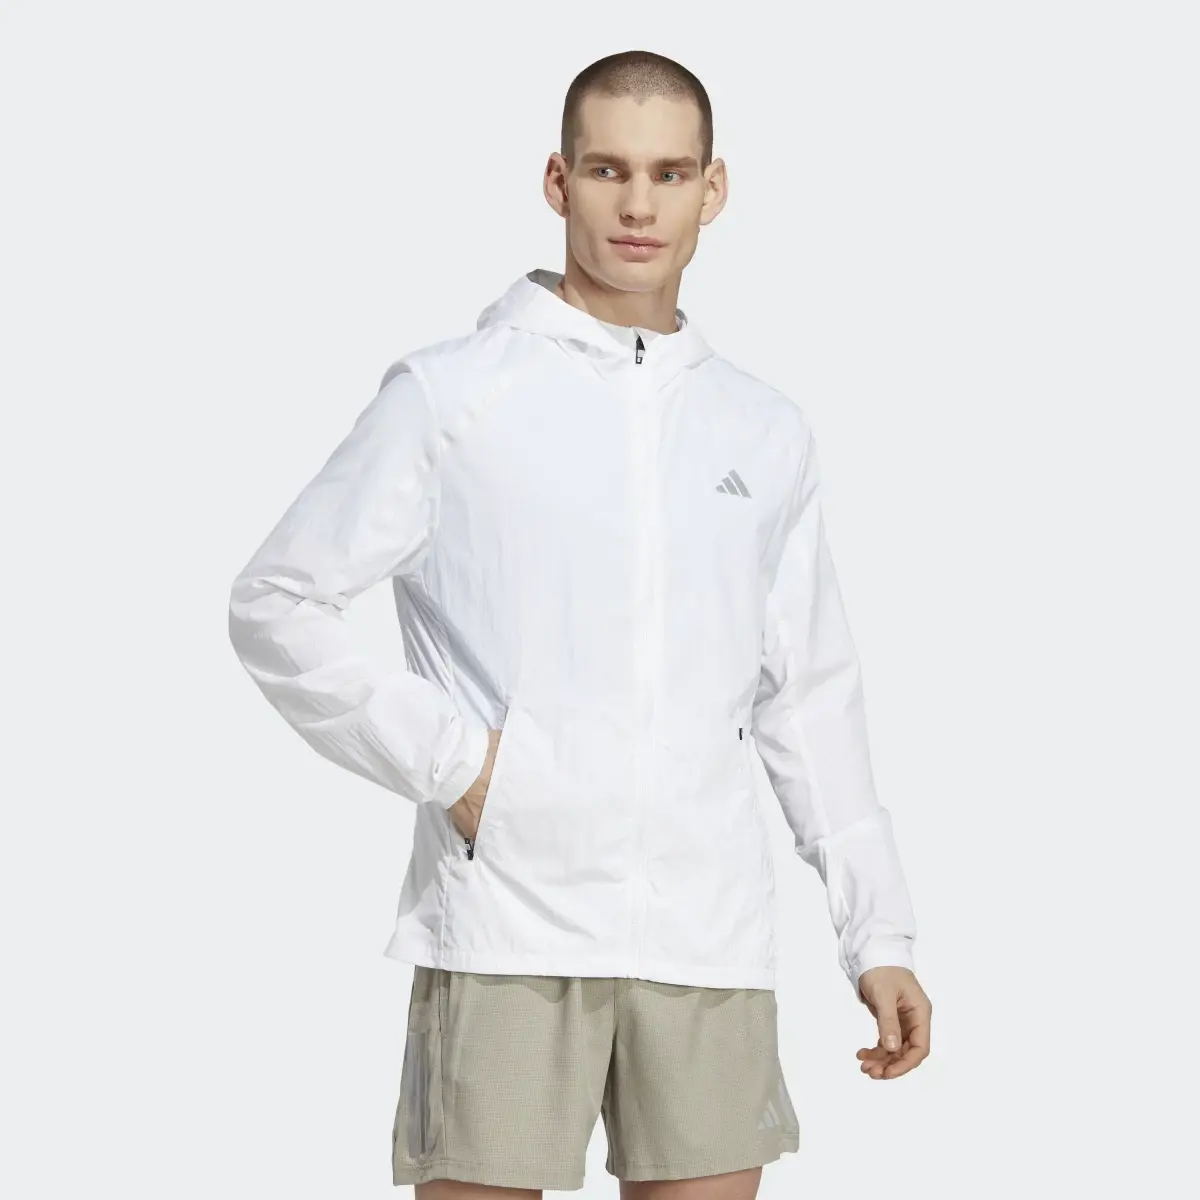 Adidas Marathon Warm-Up Jacket. 2